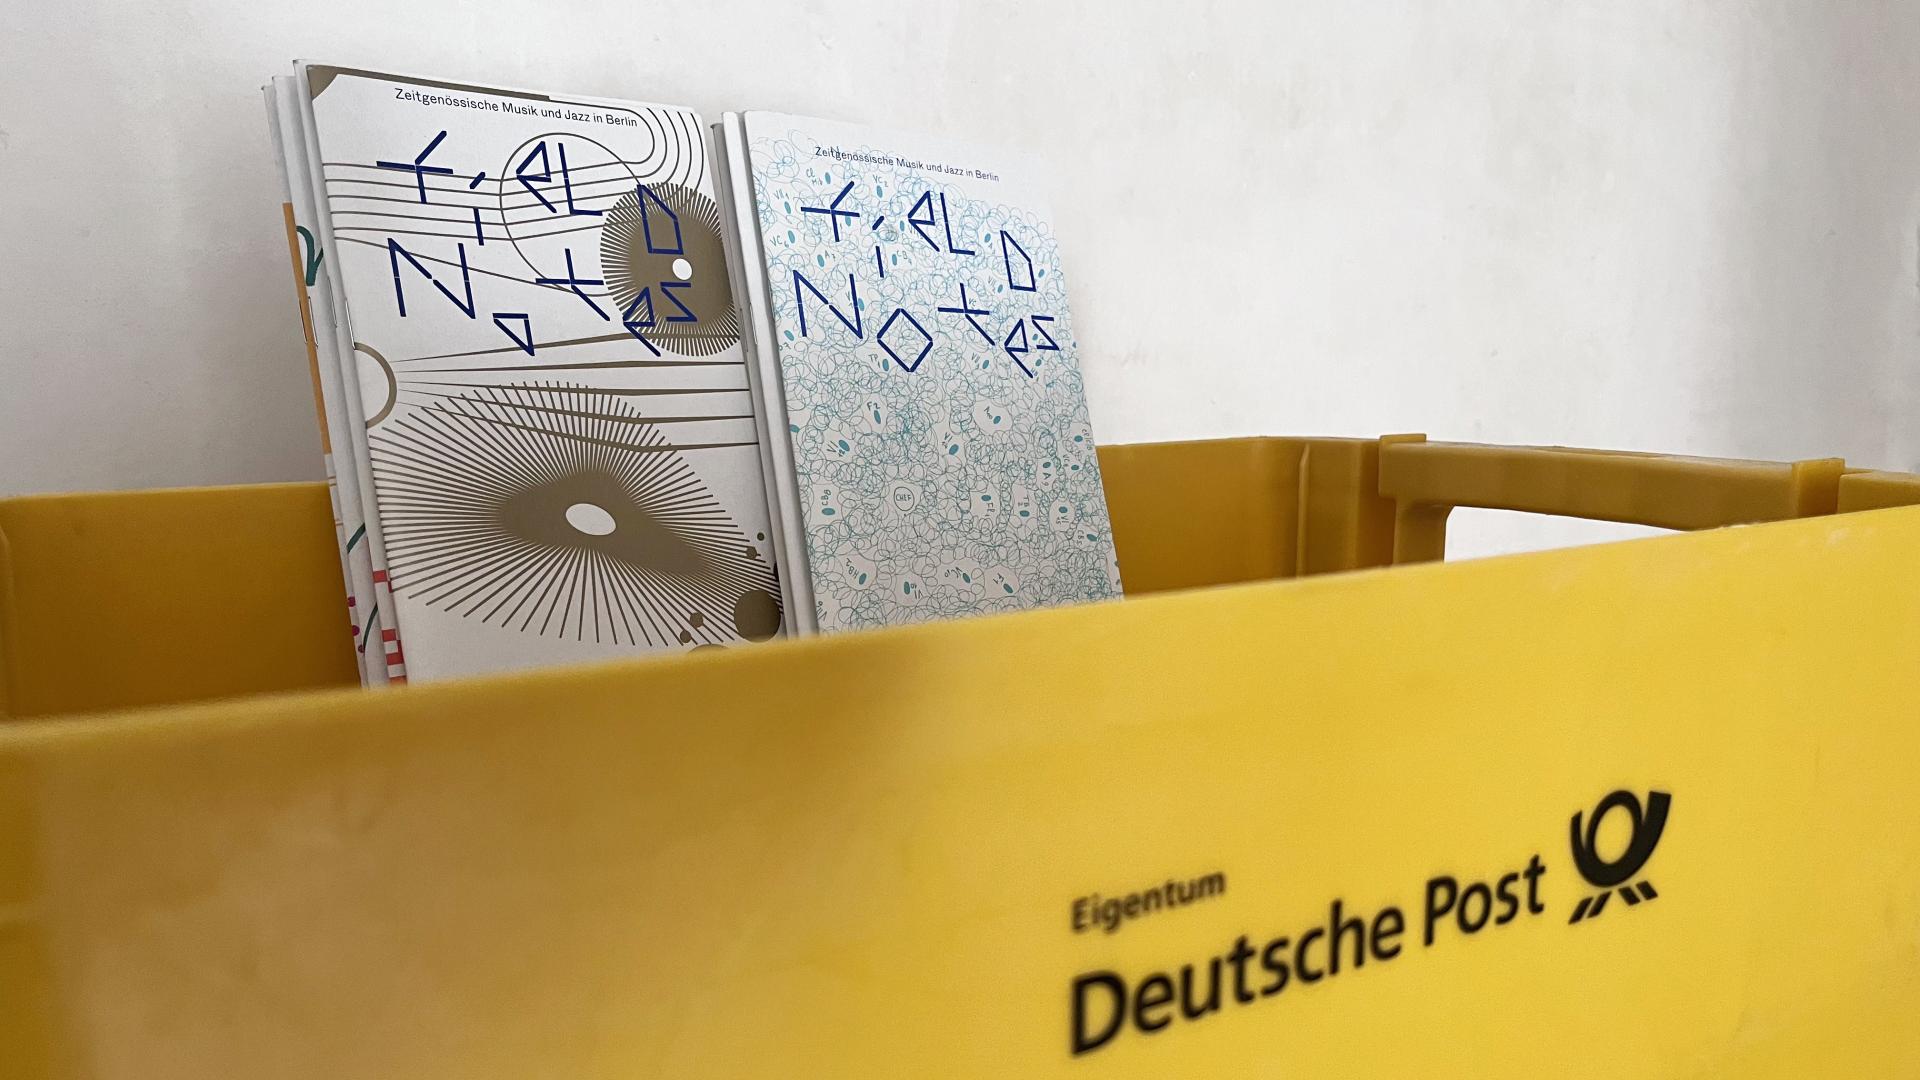 field notes Magazine liegen in einer Box der Deutschen Post